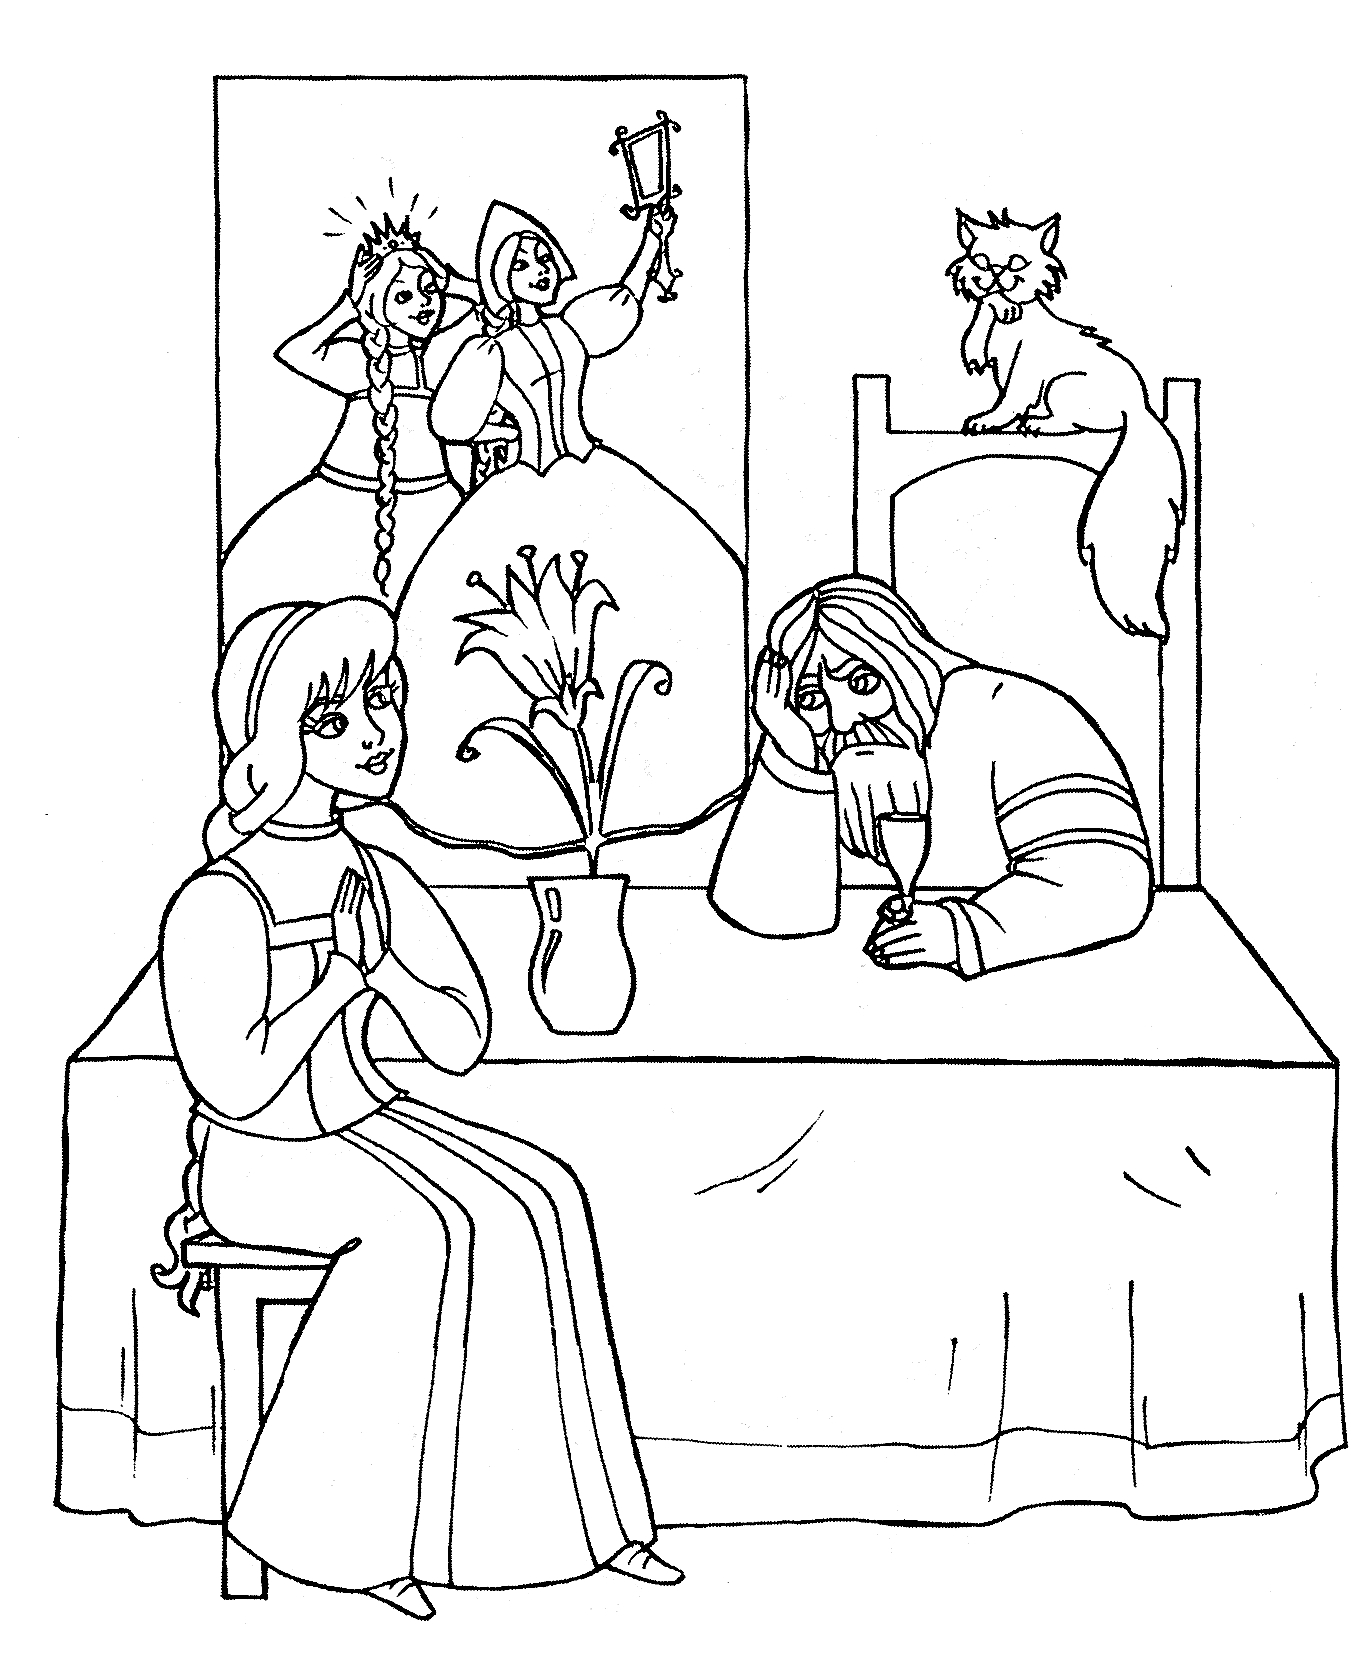 Раскраска Аленький цветочек - девушка, мужчина, кот, ваза с цветком, три девушки на заднем плане